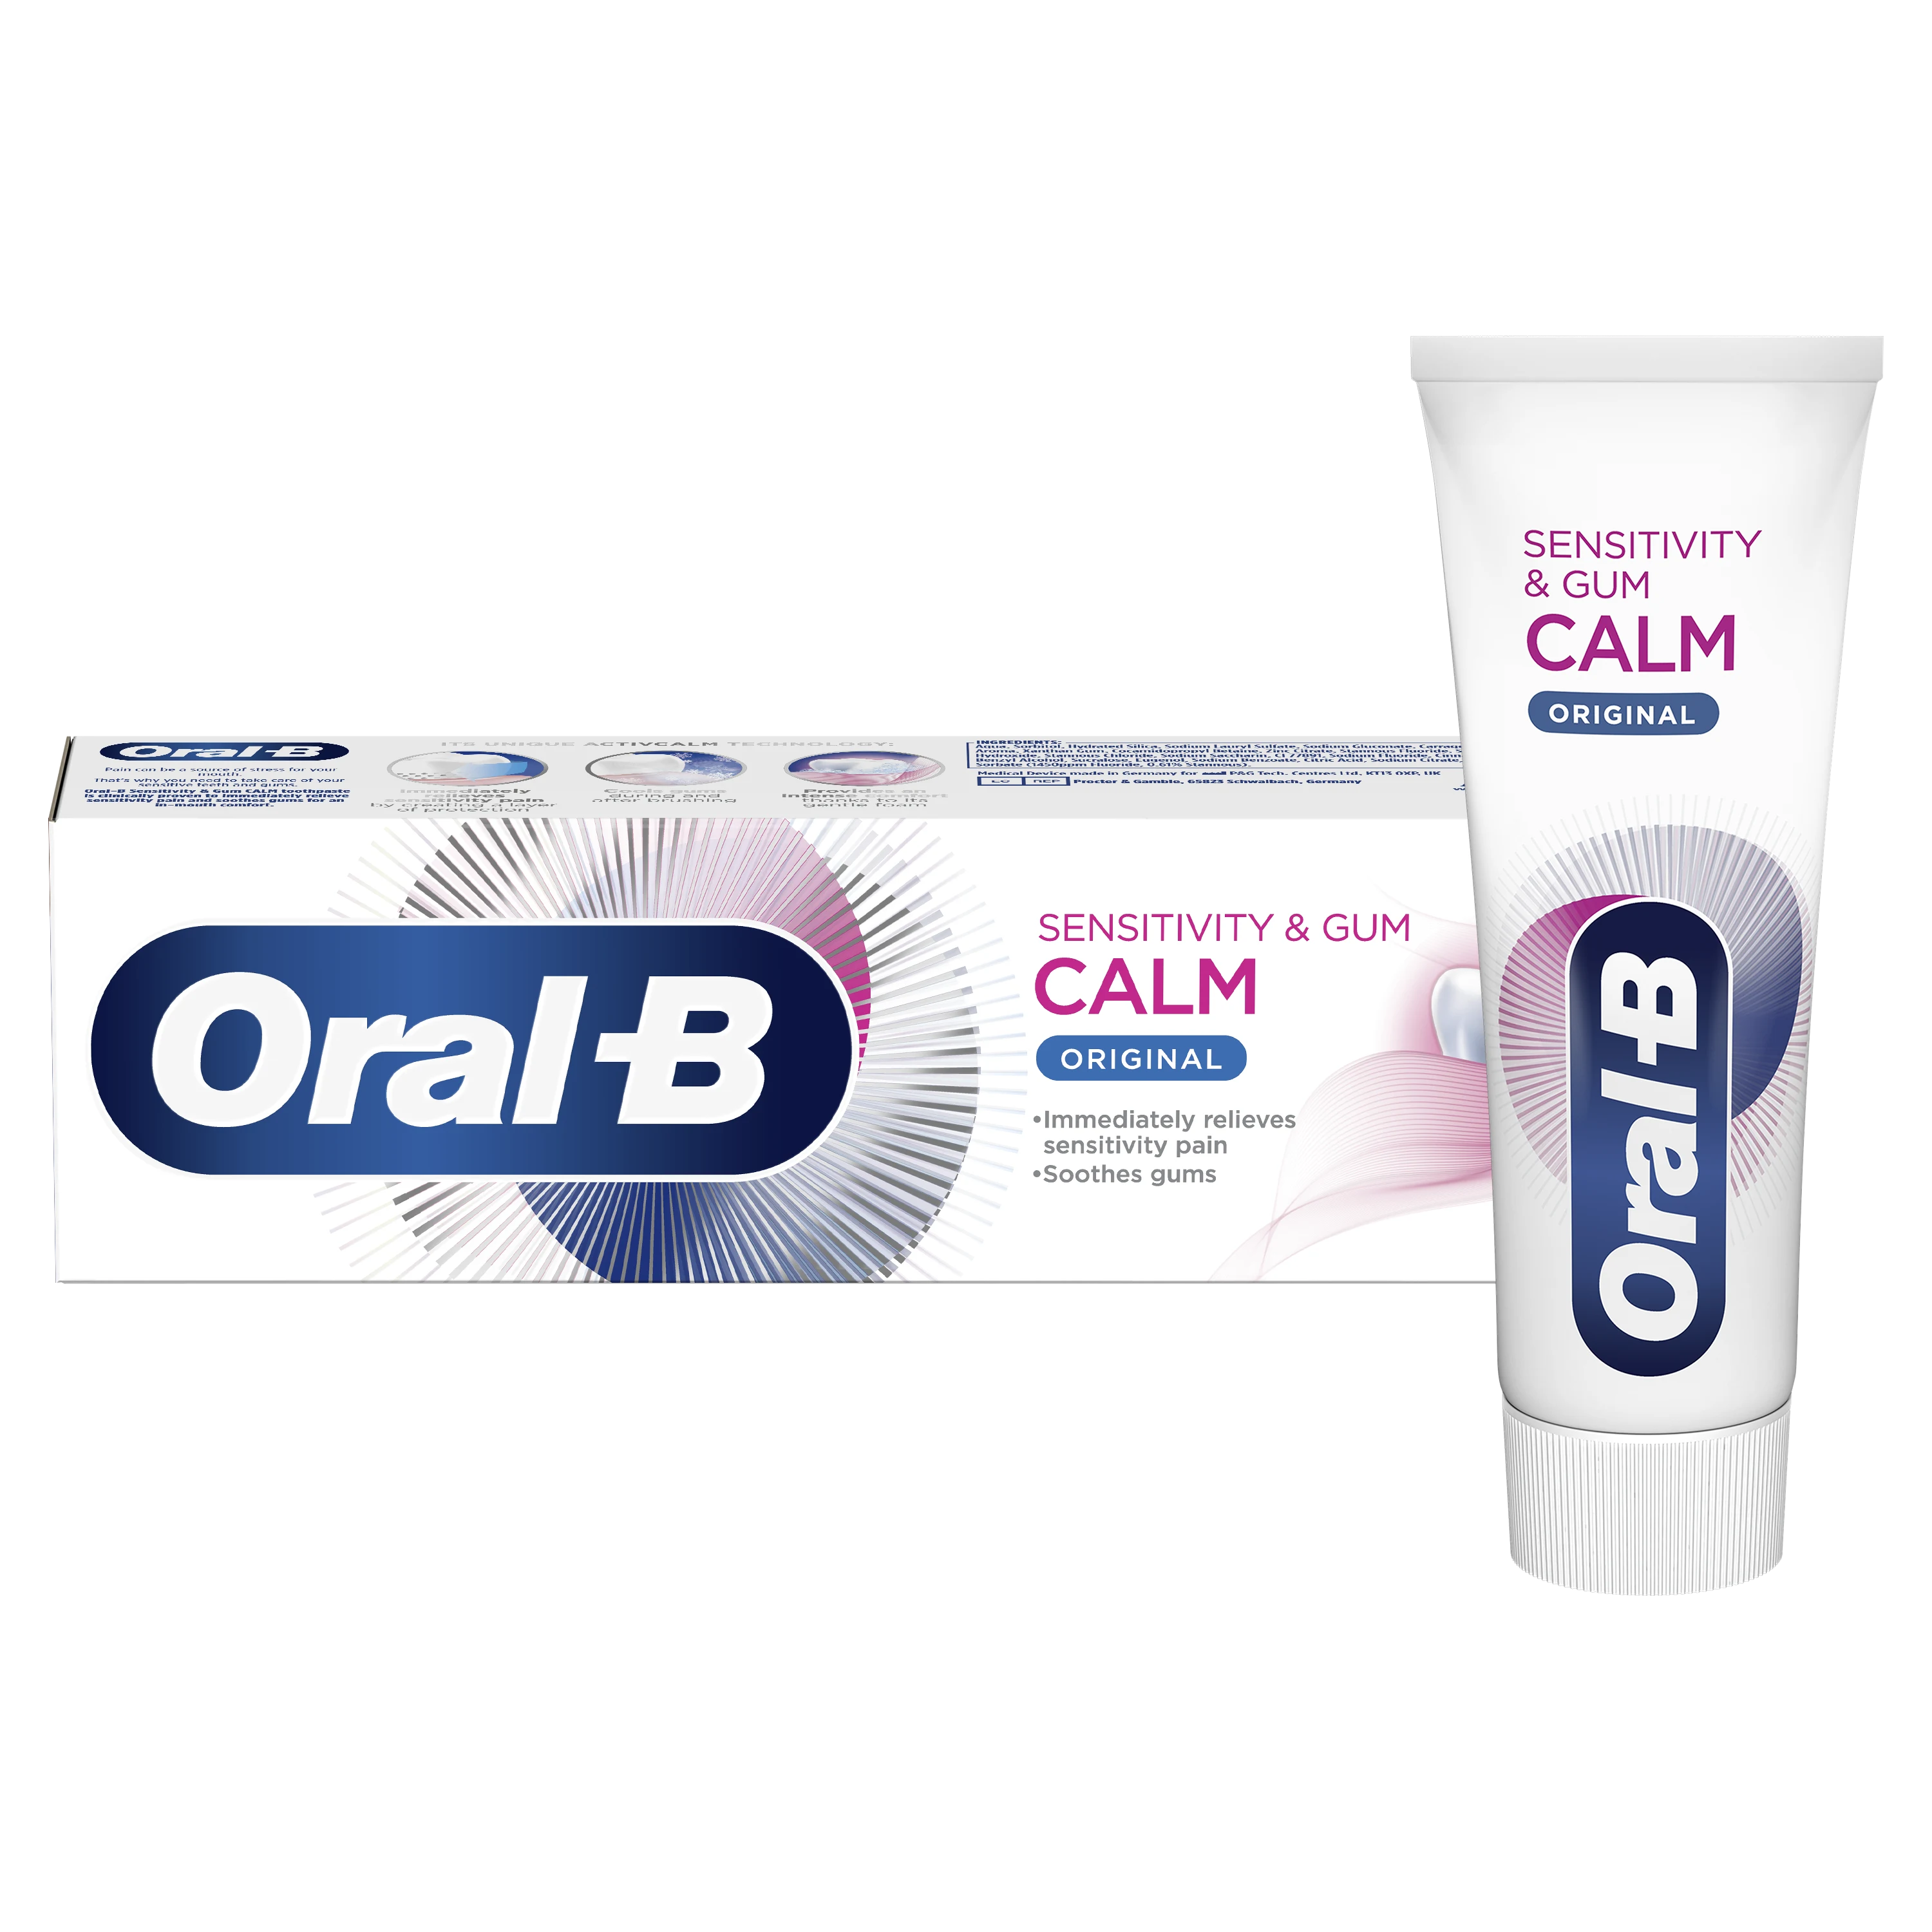 image - Oral-B Sensitivity & Gum Calm Original Toothpaste - 01 